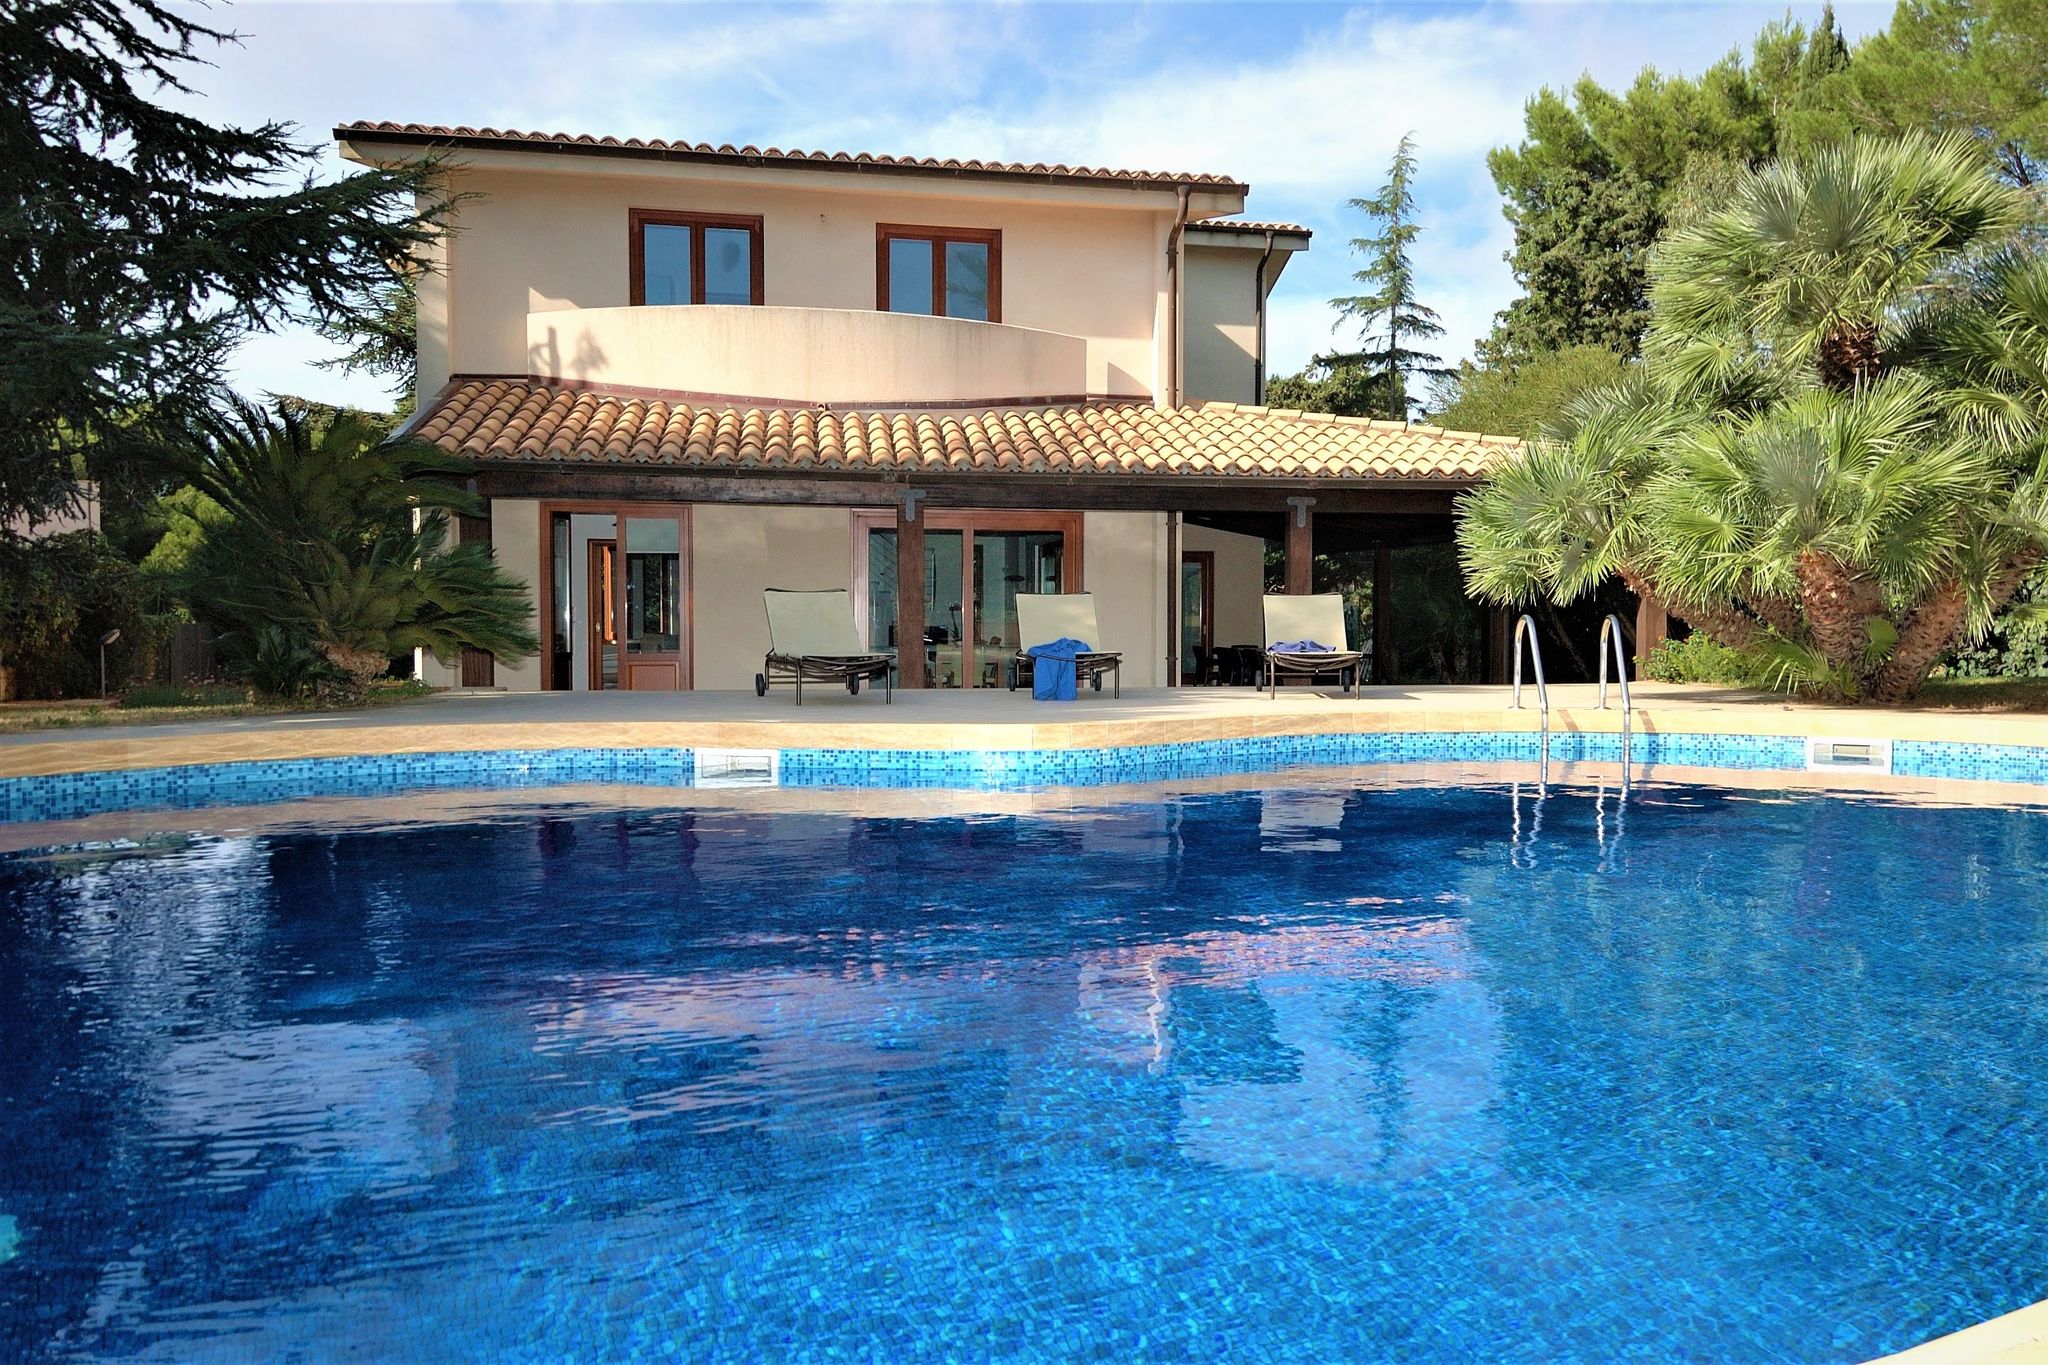 Schitterende, luxe, ruime villa met privé-zwembad en ruime tuin vlakbij zee.